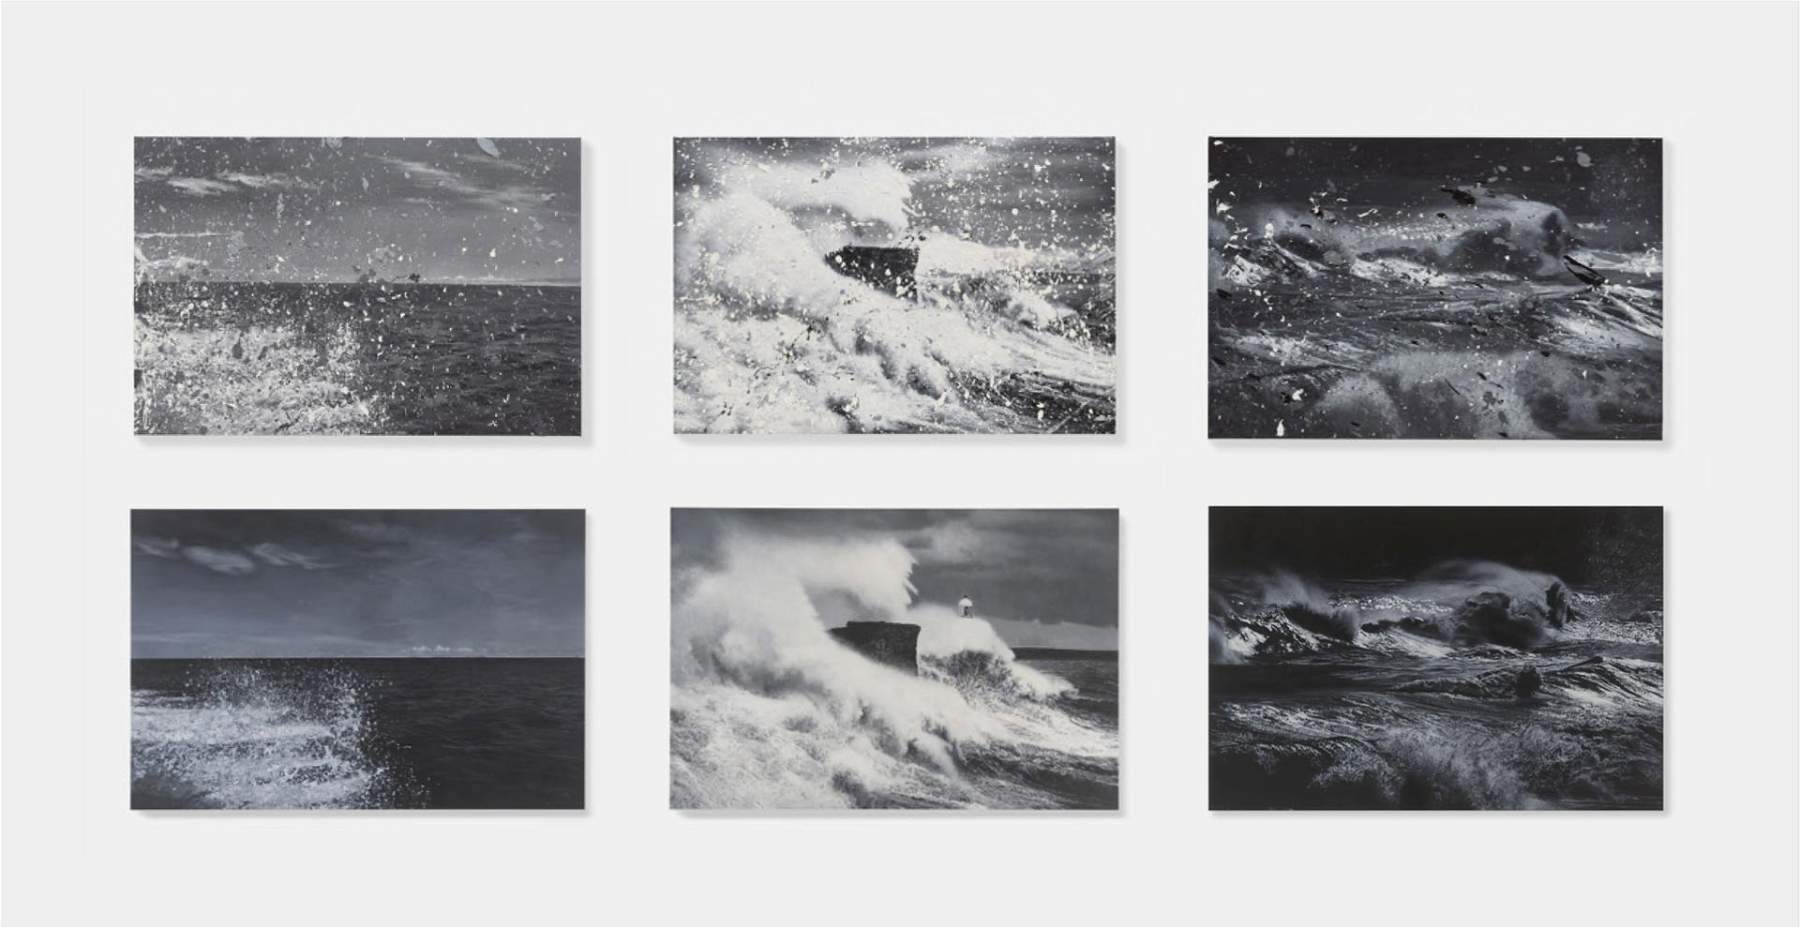 Damien Hirst expose pour la première fois ses nouvelles peintures dédiées à la mer